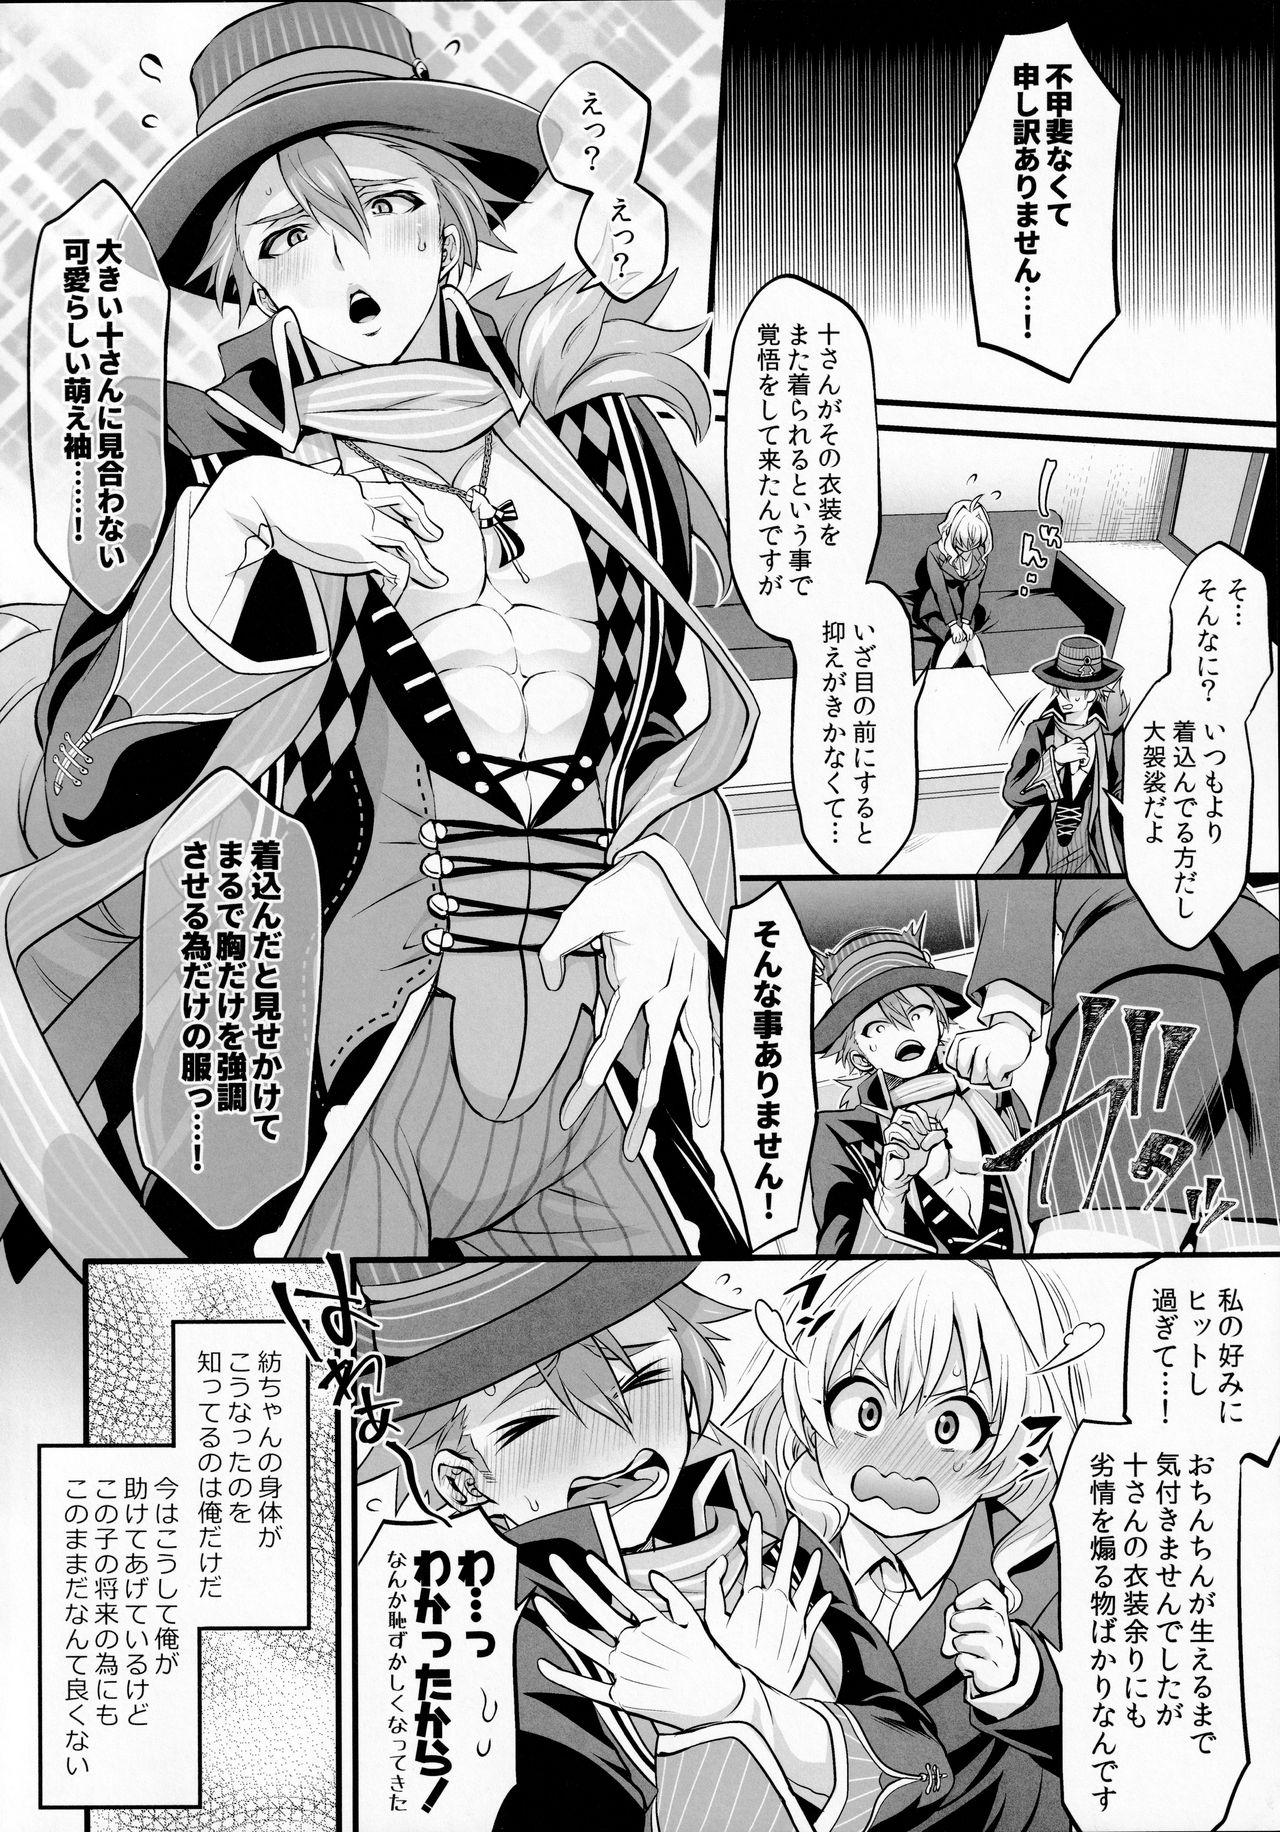 English Watashi no Ochinchin ga Amaeta Gatterun desu! - Idolish7 Free Petite Porn - Page 4